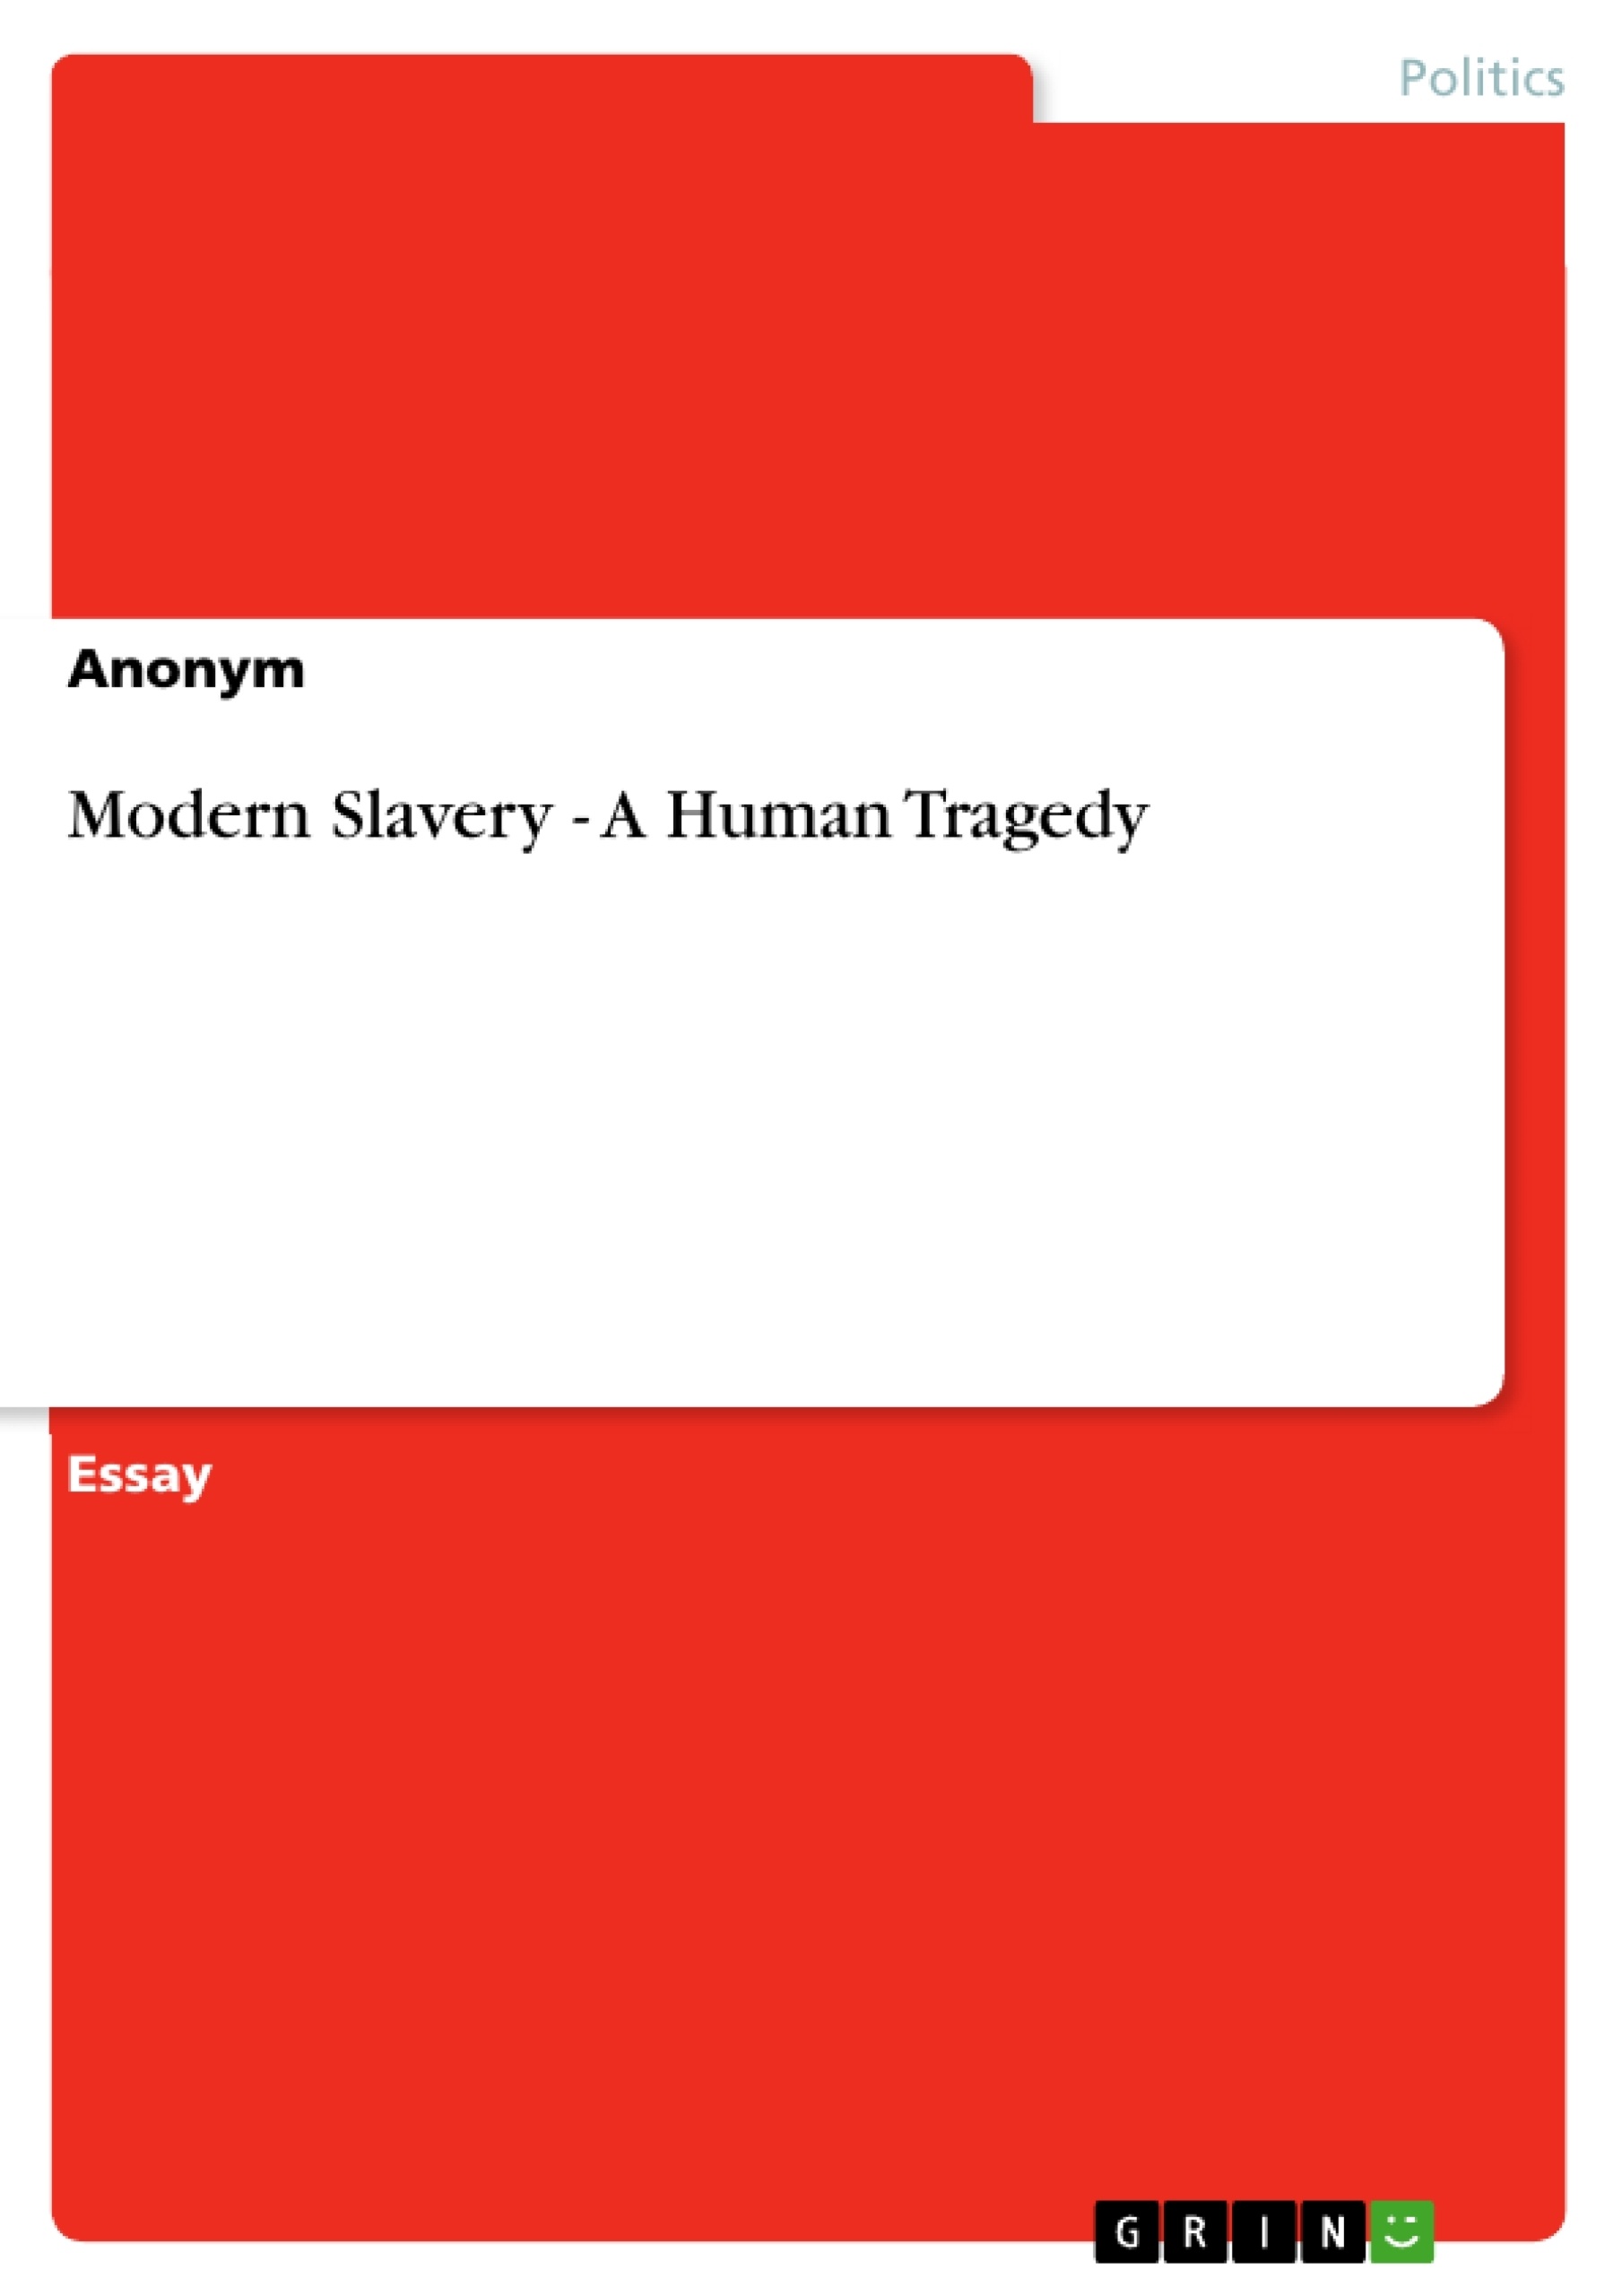 Title: Modern Slavery - A Human Tragedy